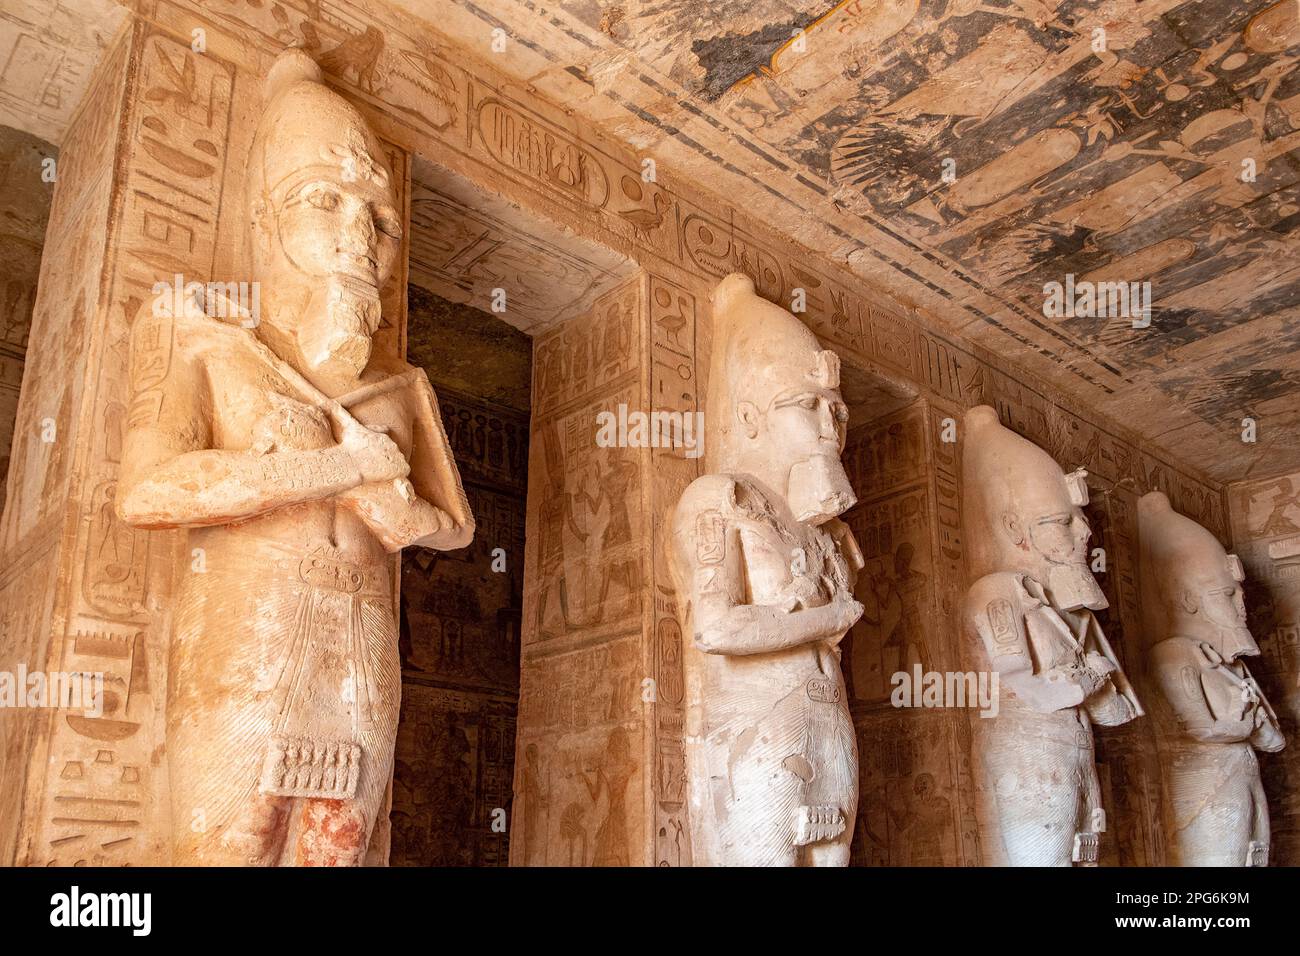 Intérieur du temple principal d'Abu Simbel, Égypte Banque D'Images